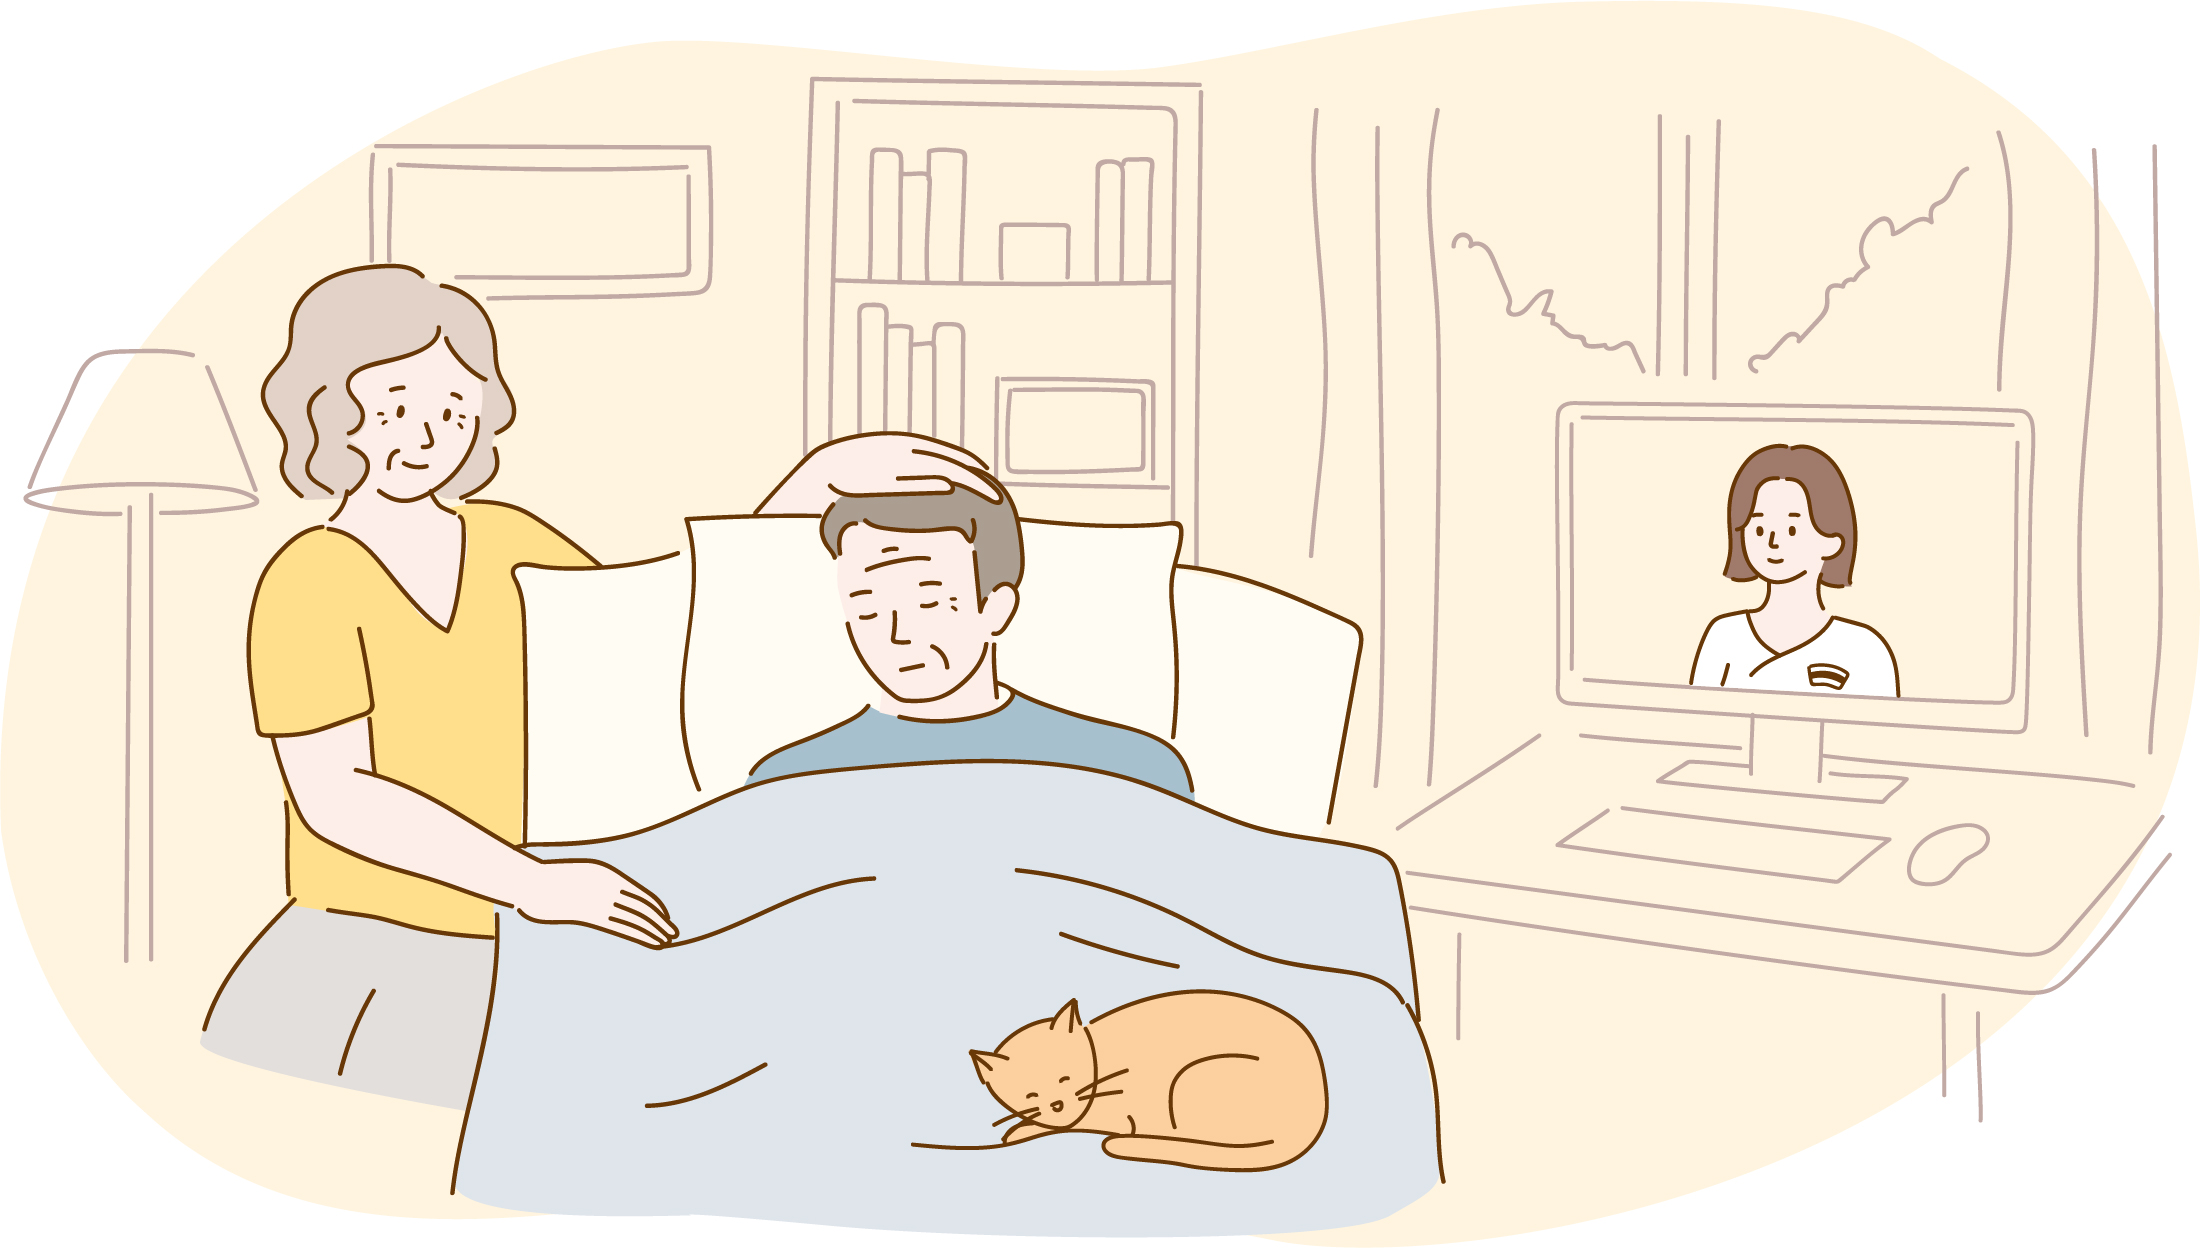 grafika przedstawiająca osobę chorą, leżącą w łóżku, przy niej stoi kobieta. Oboje trzymają się za ręce. Na łóżku ley kot, obok stoi biurko z włączonym komputerem osobistym